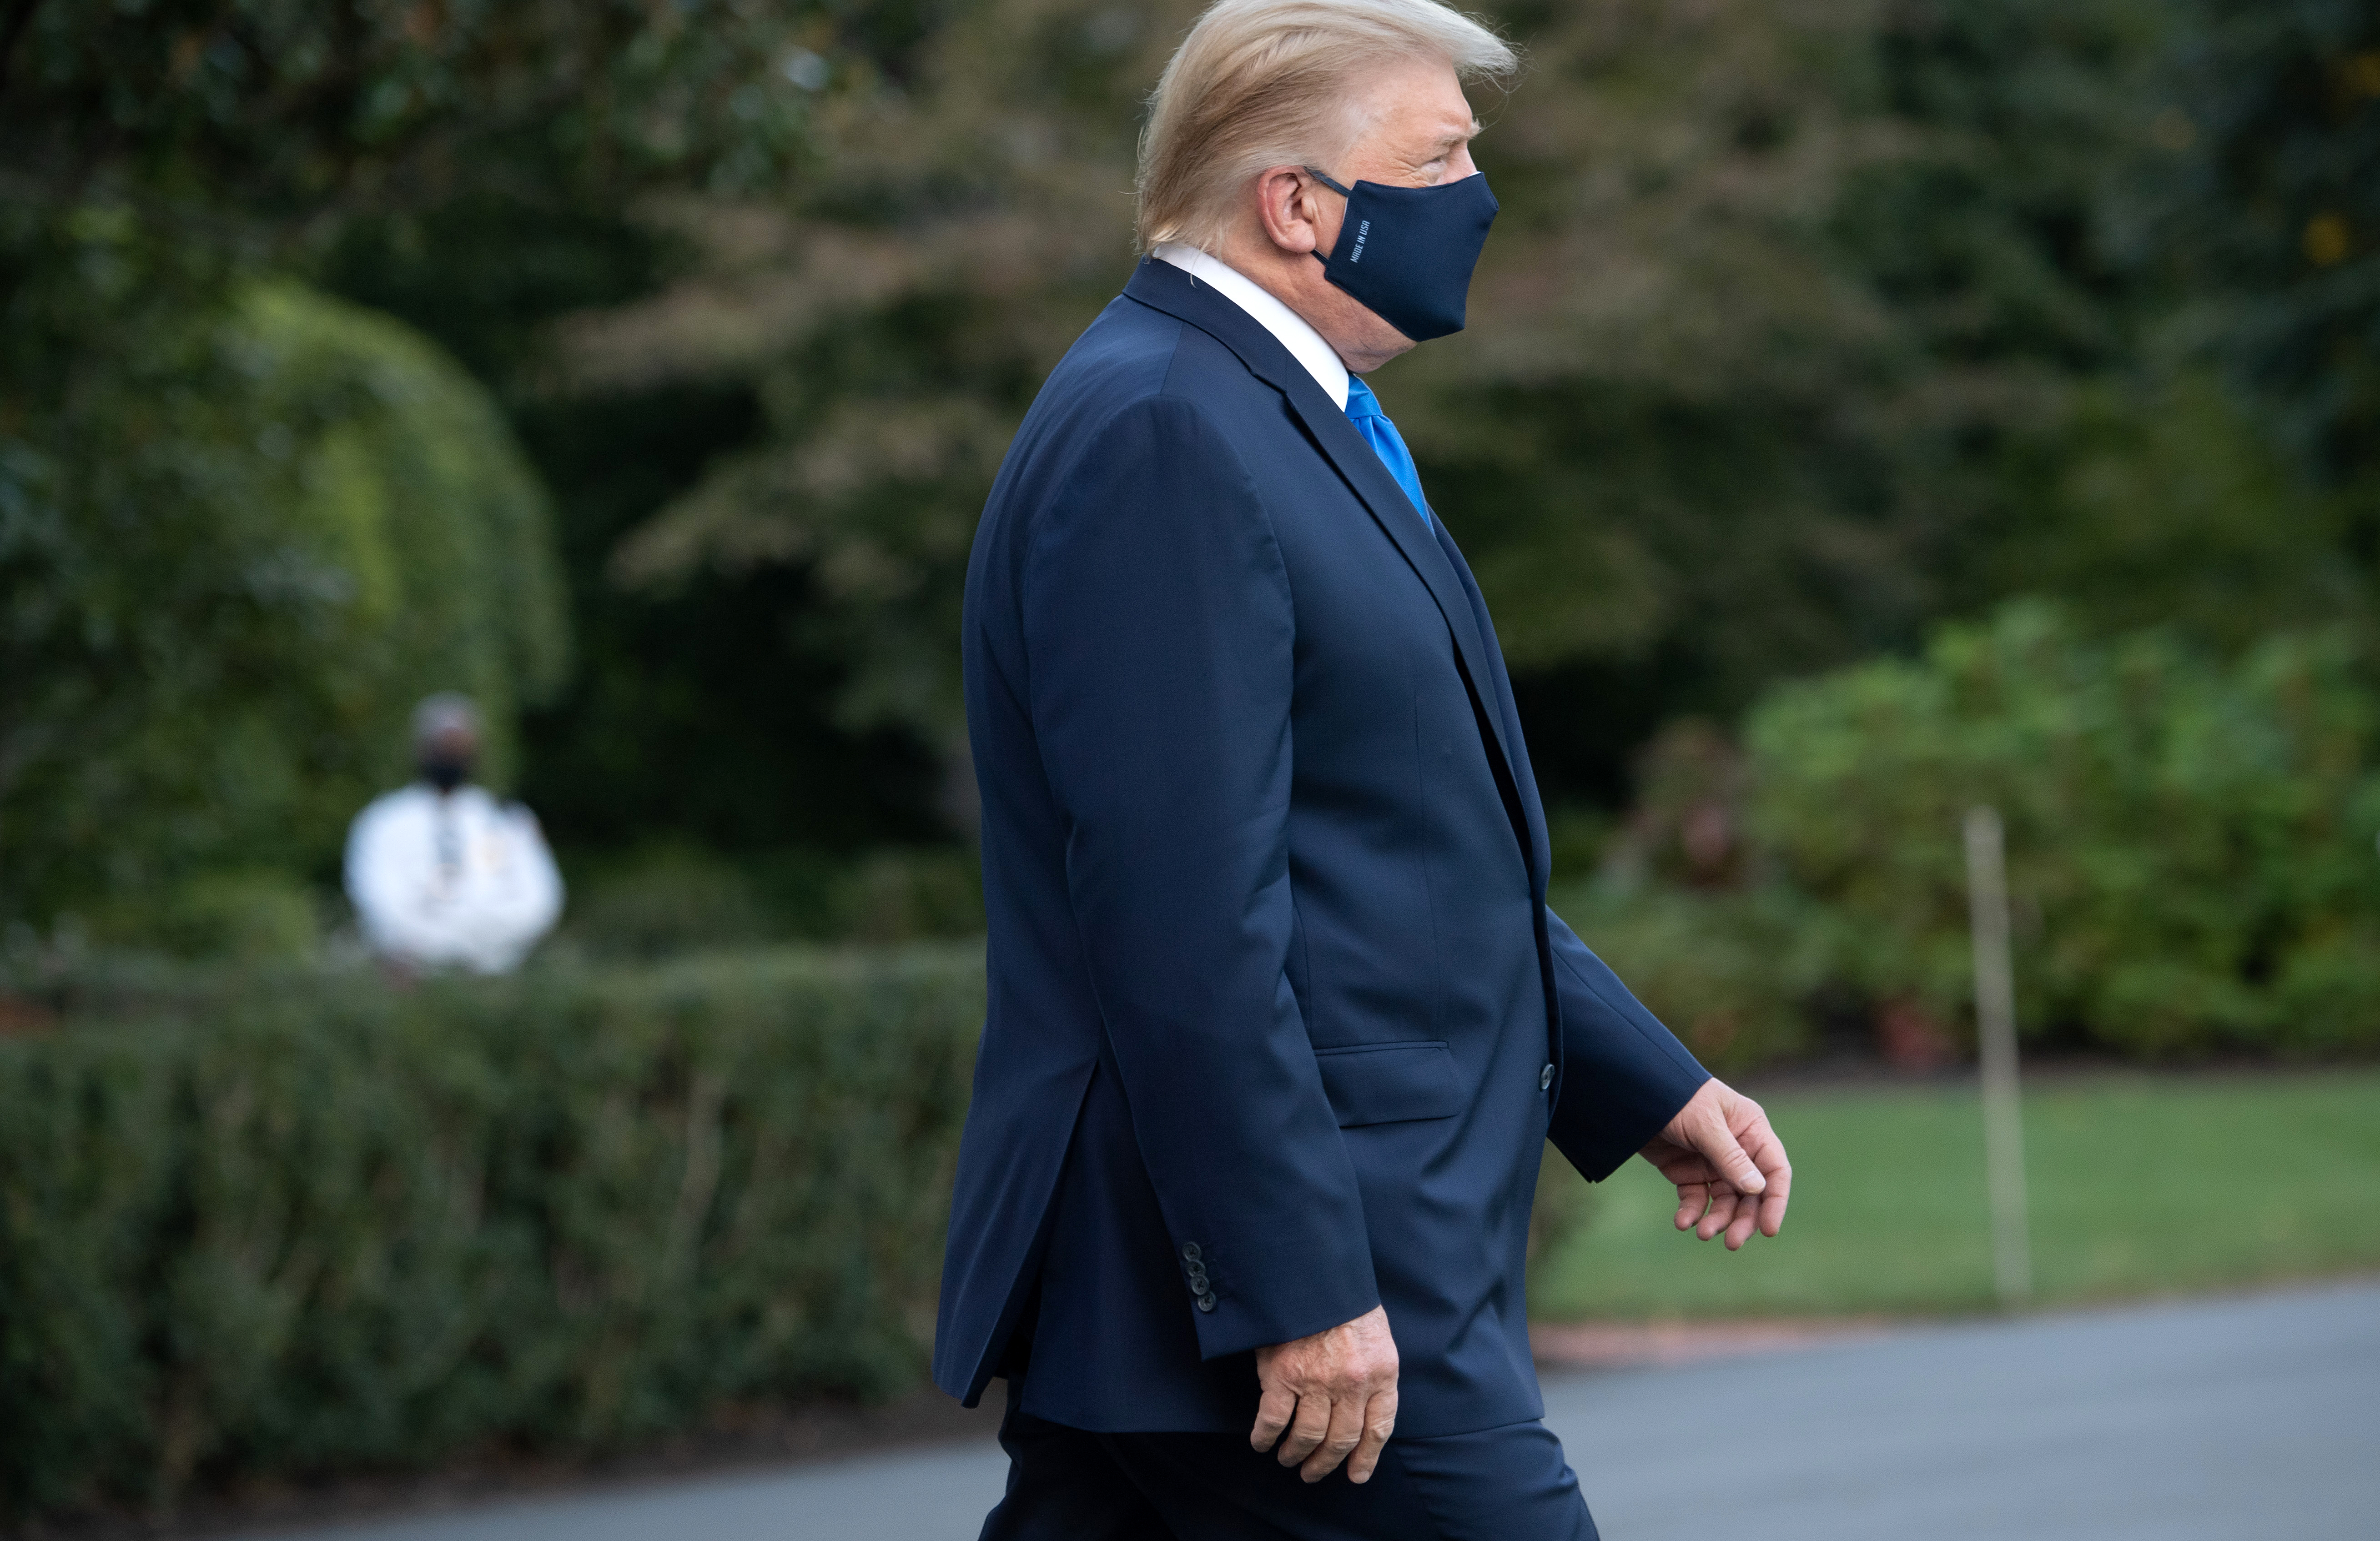 “No quería esconderme”: Trump afirmó que no tuvo otra opción que exponerse al virus